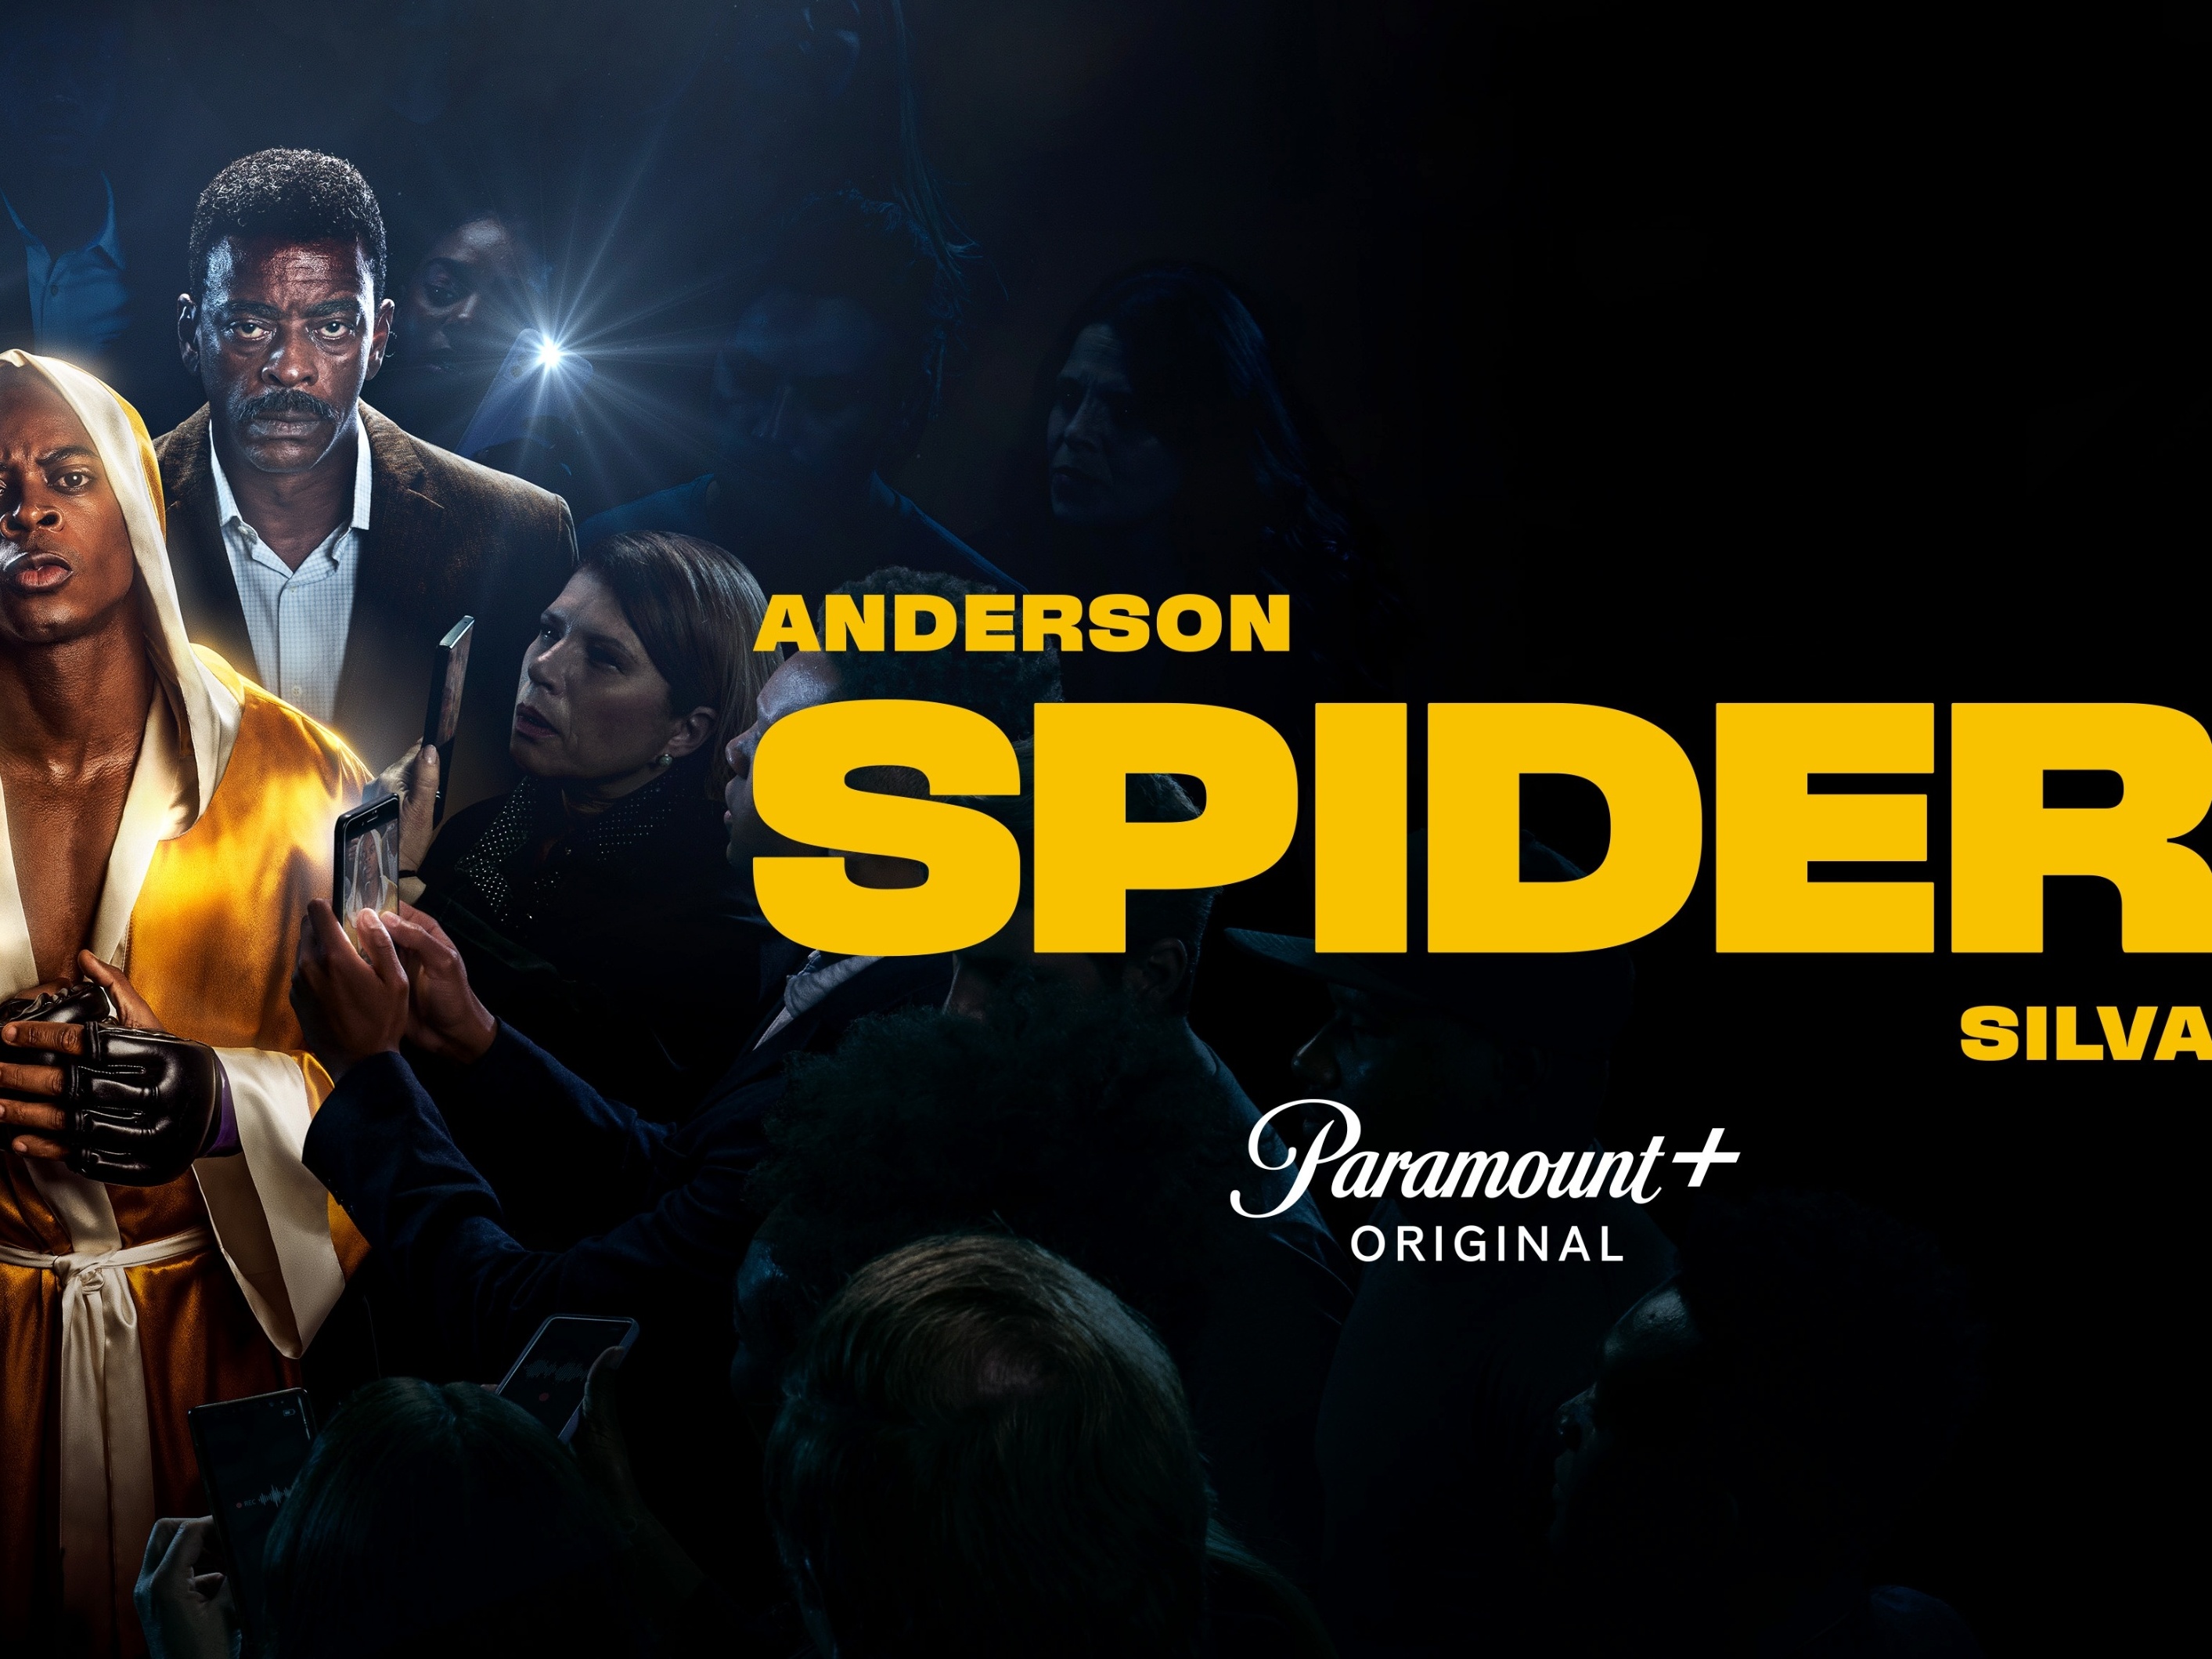 Anderson Spider Silva: Paramount+ divulga trailer da série sobre o lutador  - Mundo Conectado